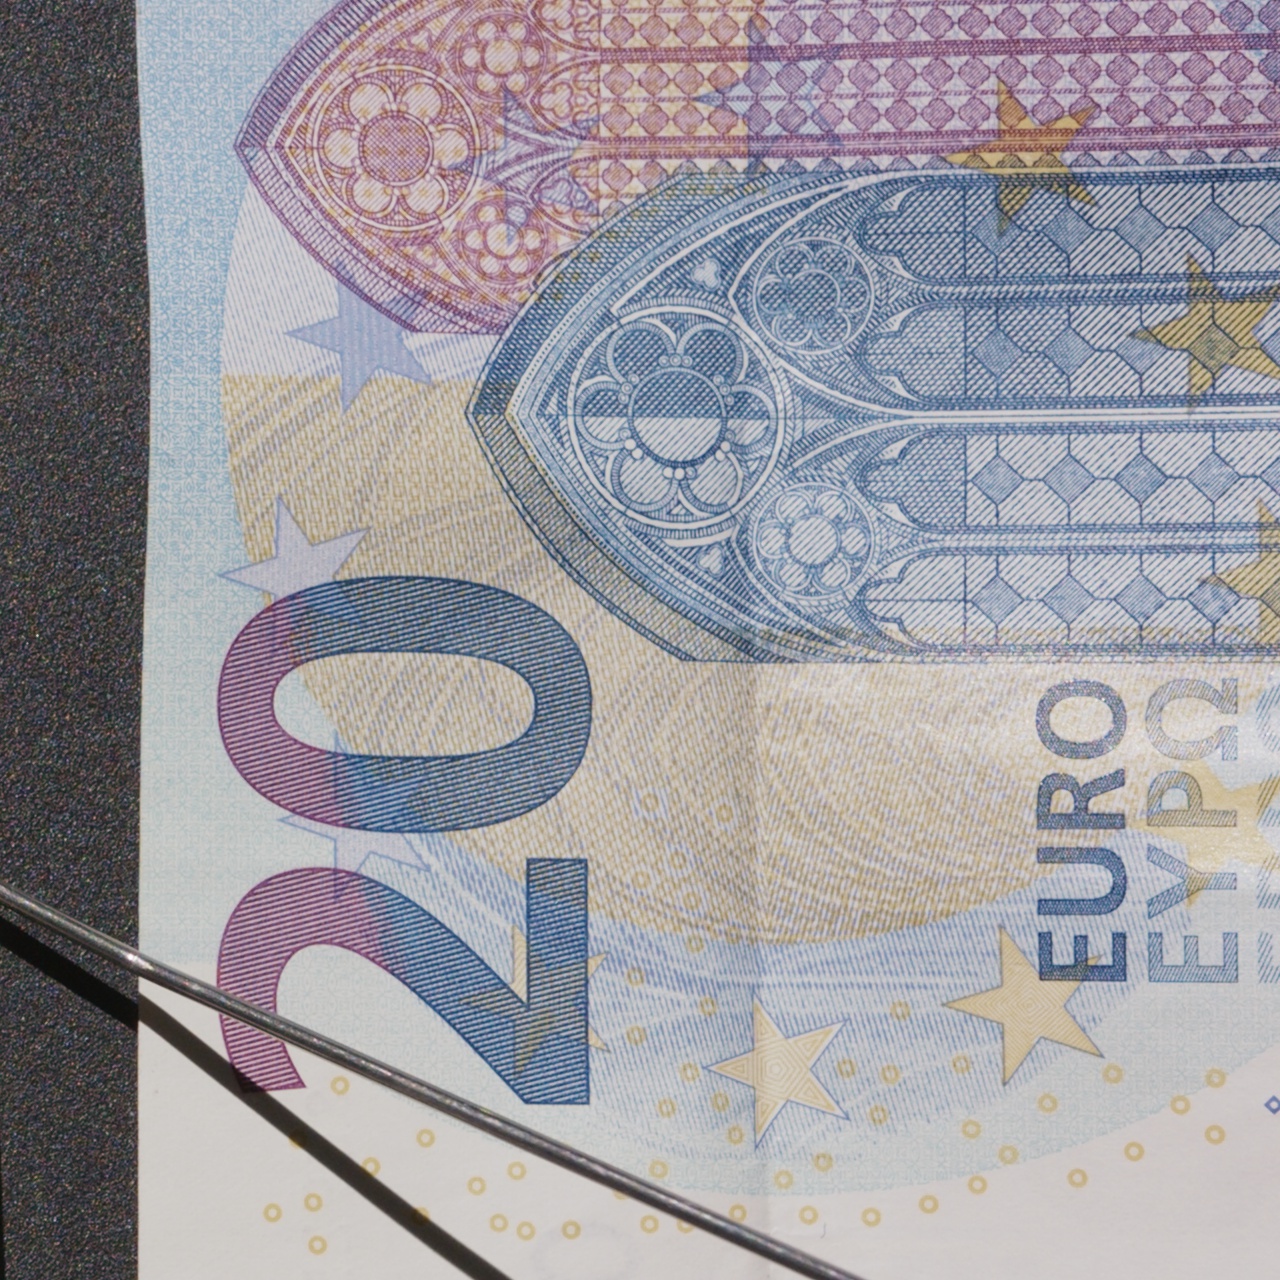 Euro_Banknotes_Detail_BRAW.jpg